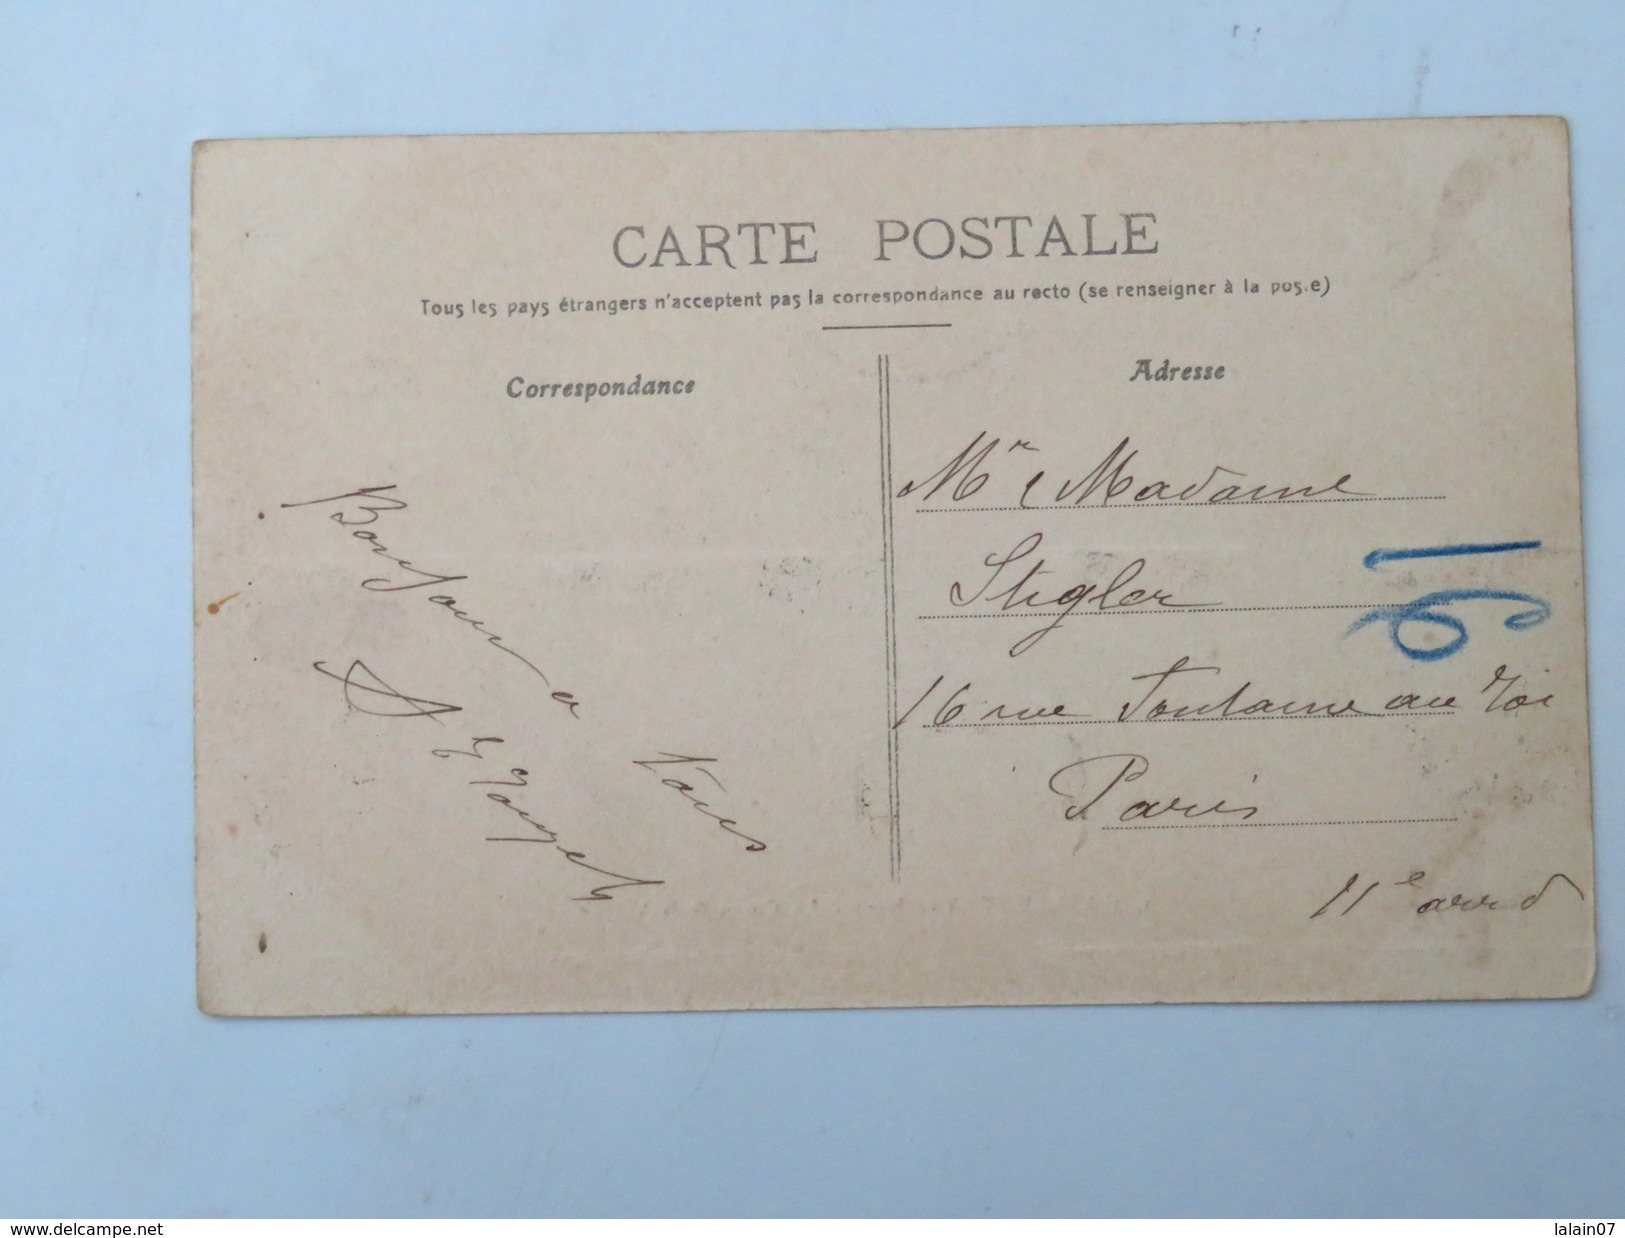 C.P.A. 84 CAMARET (Vaucluse) : Le Cours & La Vierge,  Animé, En 1916 - Camaret Sur Aigues